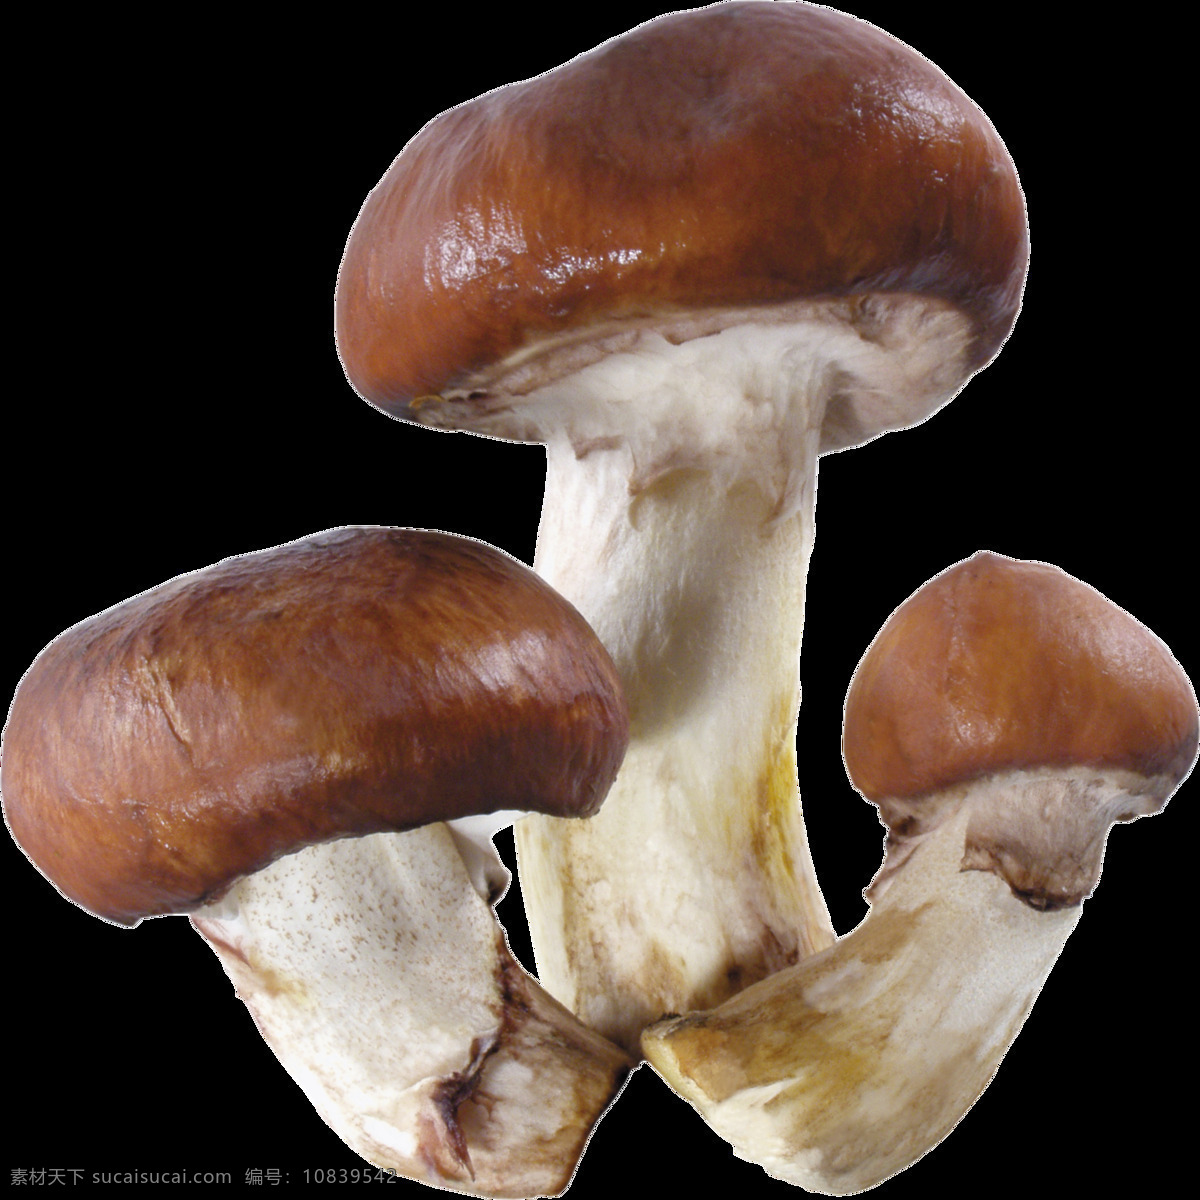 新鲜 蘑菇 免 抠 透明 图 层 蘑菇卡通画 可爱蘑菇 蘑菇头 蘑菇矢量图 蛇蘑菇 白蘑菇 菇 野生蘑菇 新鲜香菇 干香菇 鲜蘑 卡通香菇 椴木香菇 香菇素材 野生香菇